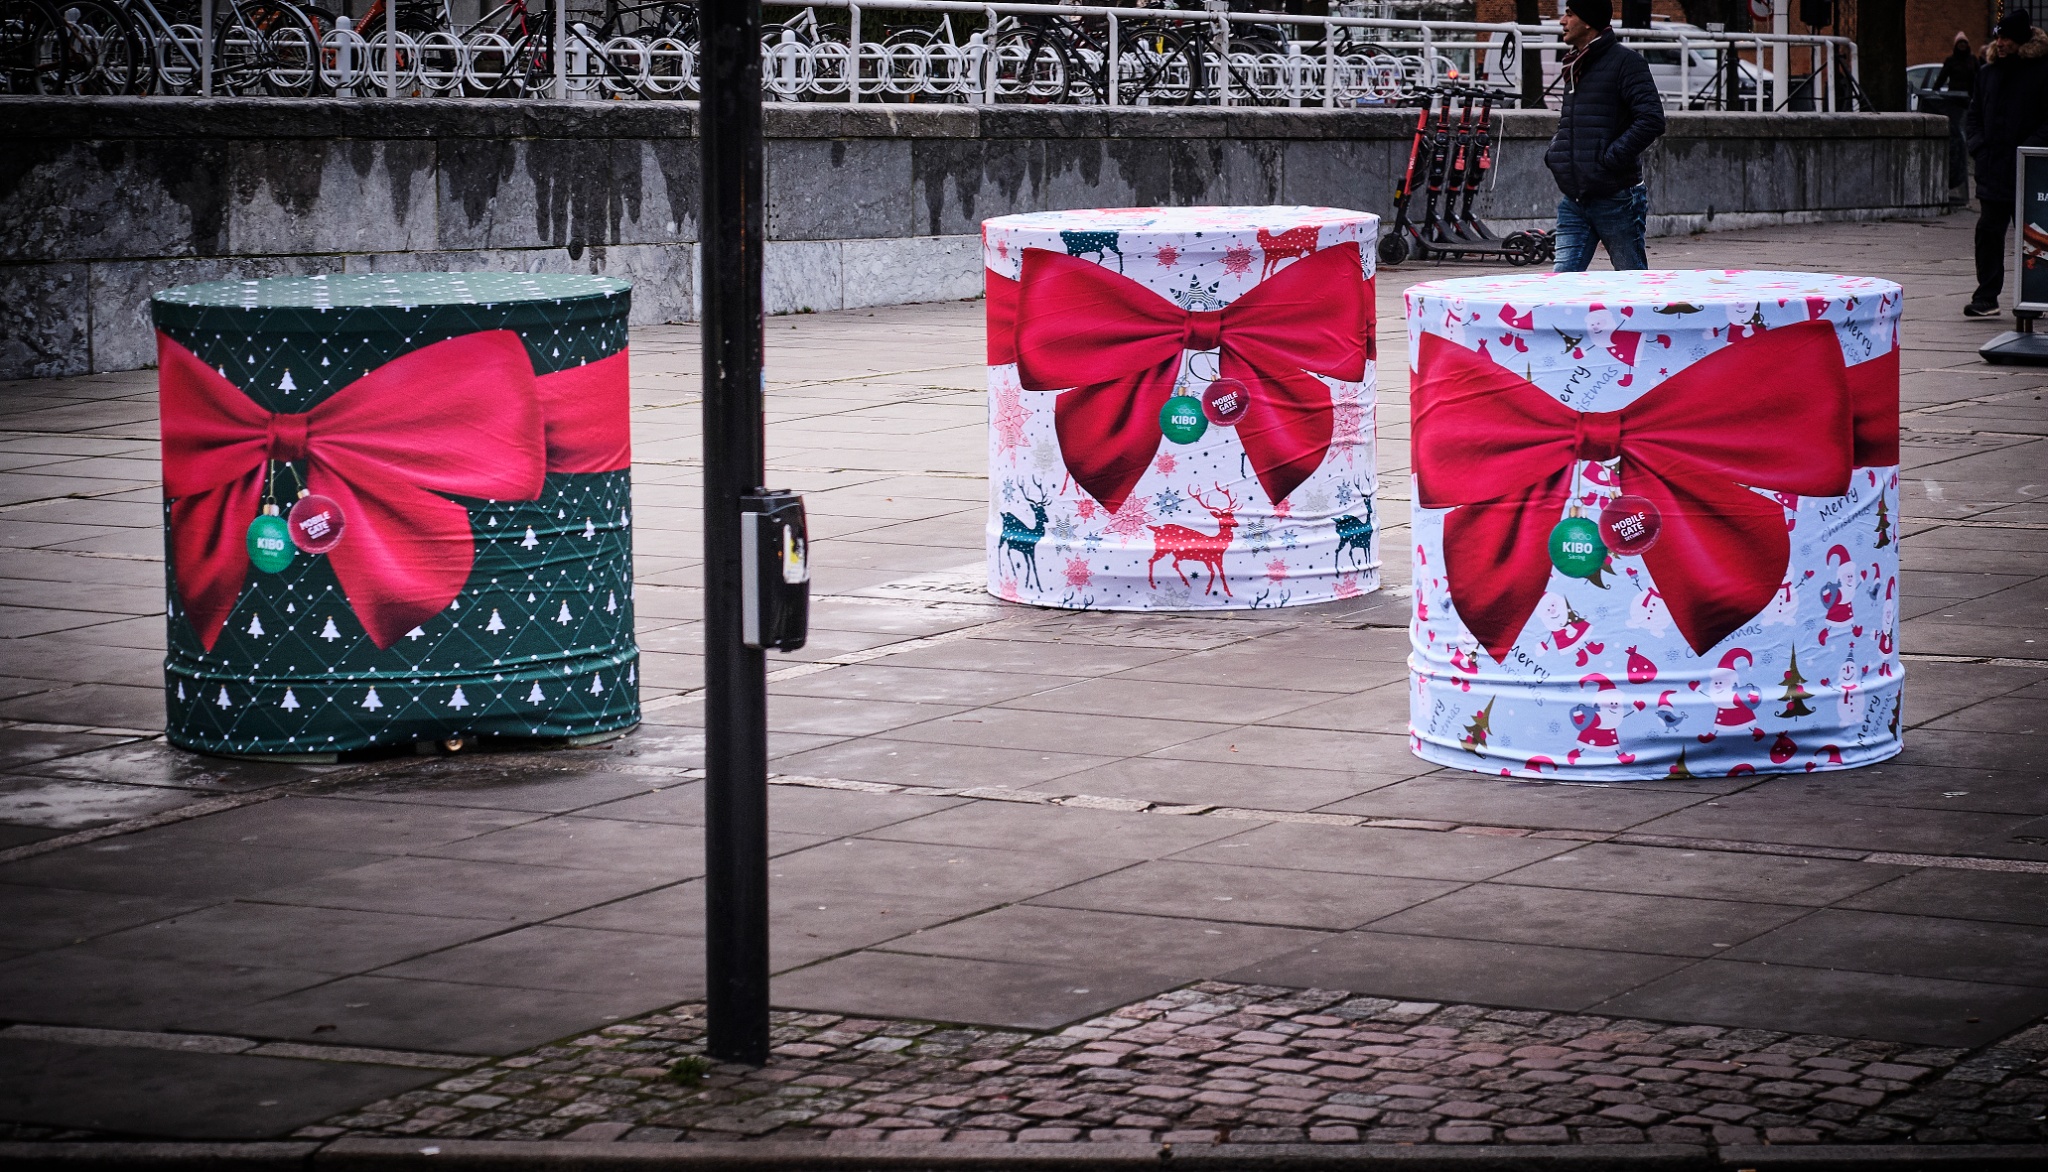 Commercial Barrier - julegaver på rådhuspladsen (002)